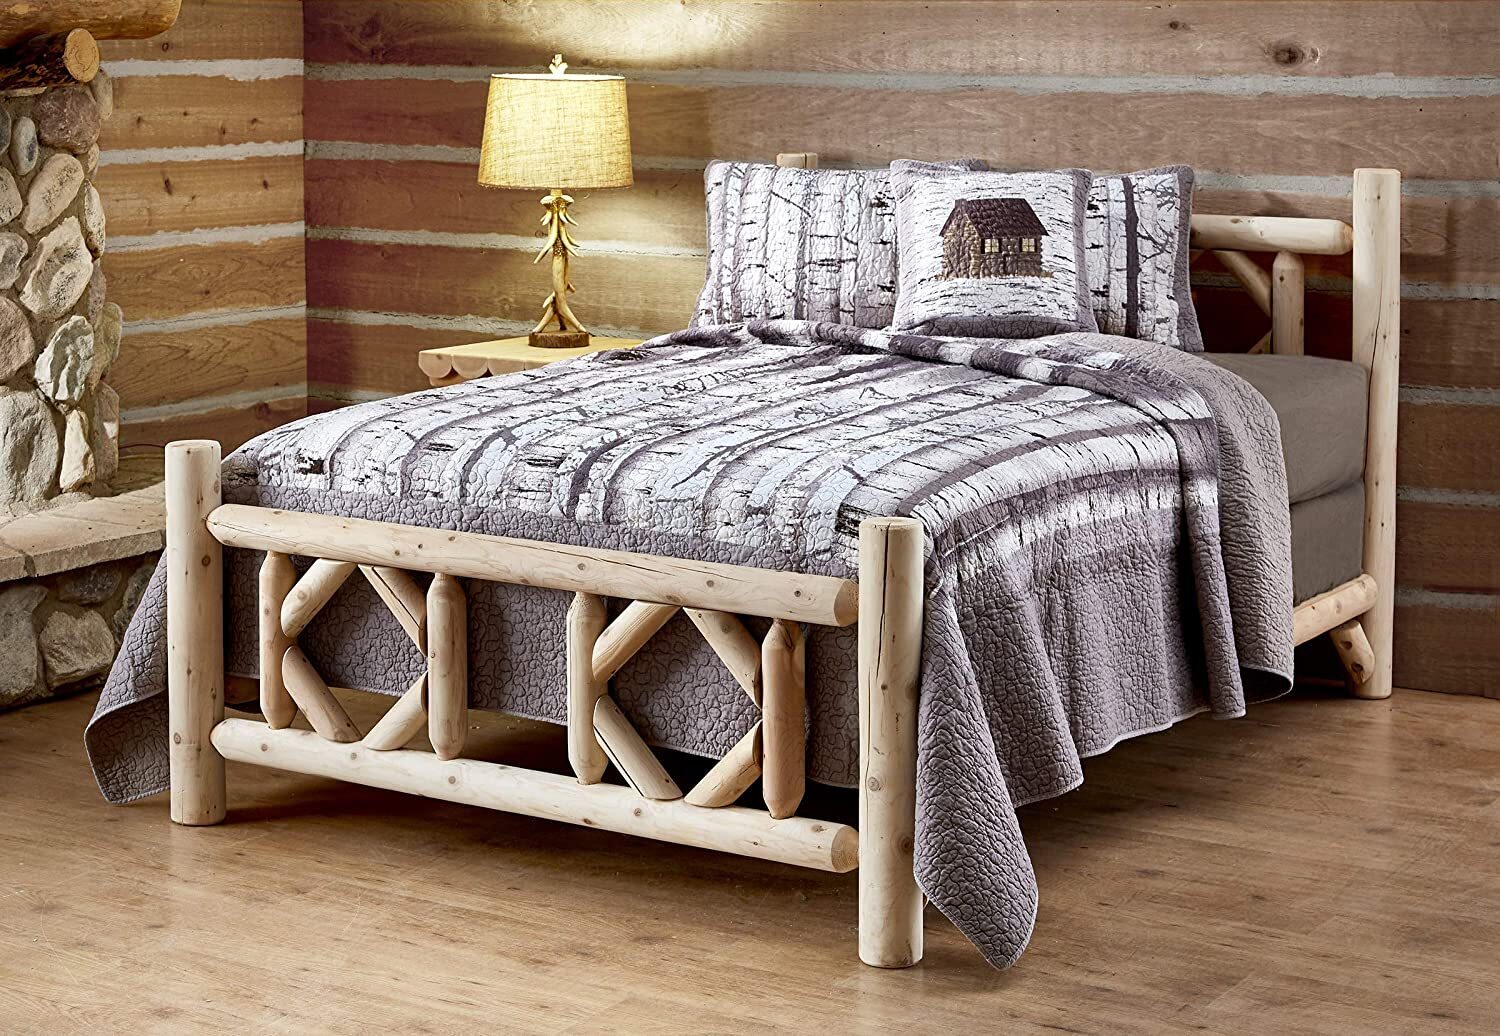 Diamond Design Cedar Bedroom Furniture